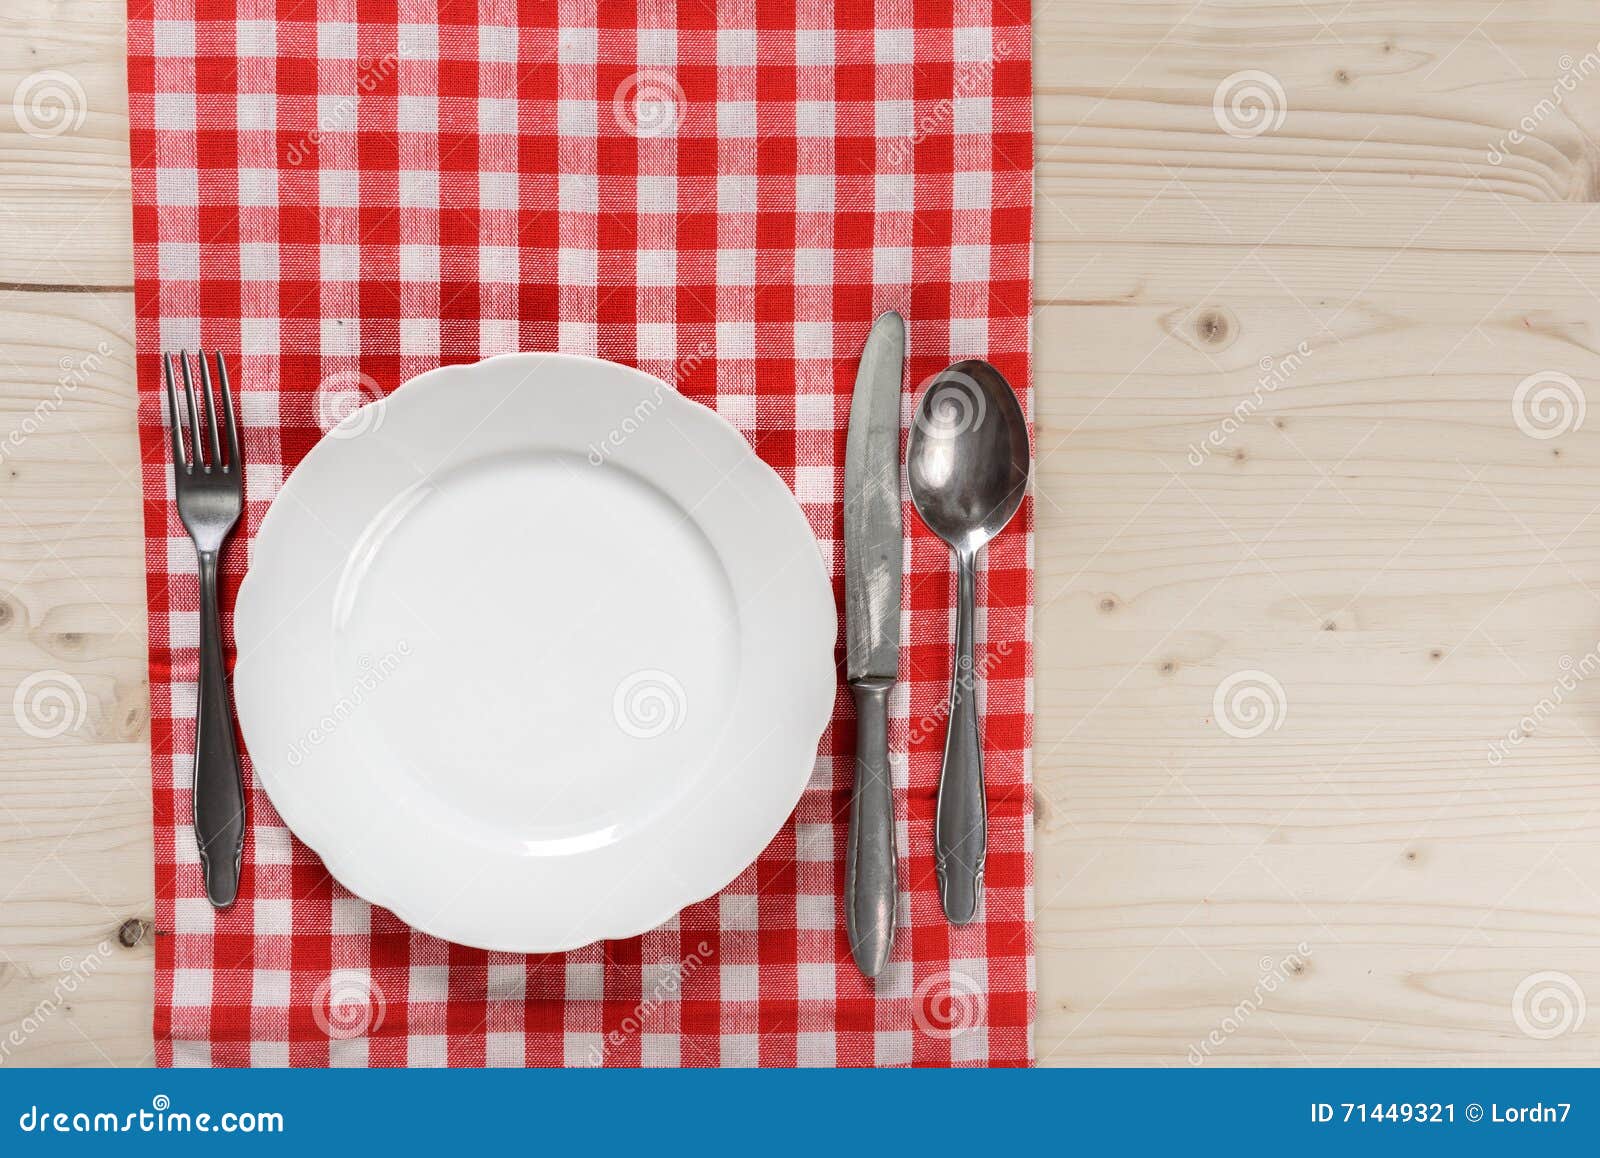 Holztisch Mit Karierter Roter Tischdecken Platte Messer